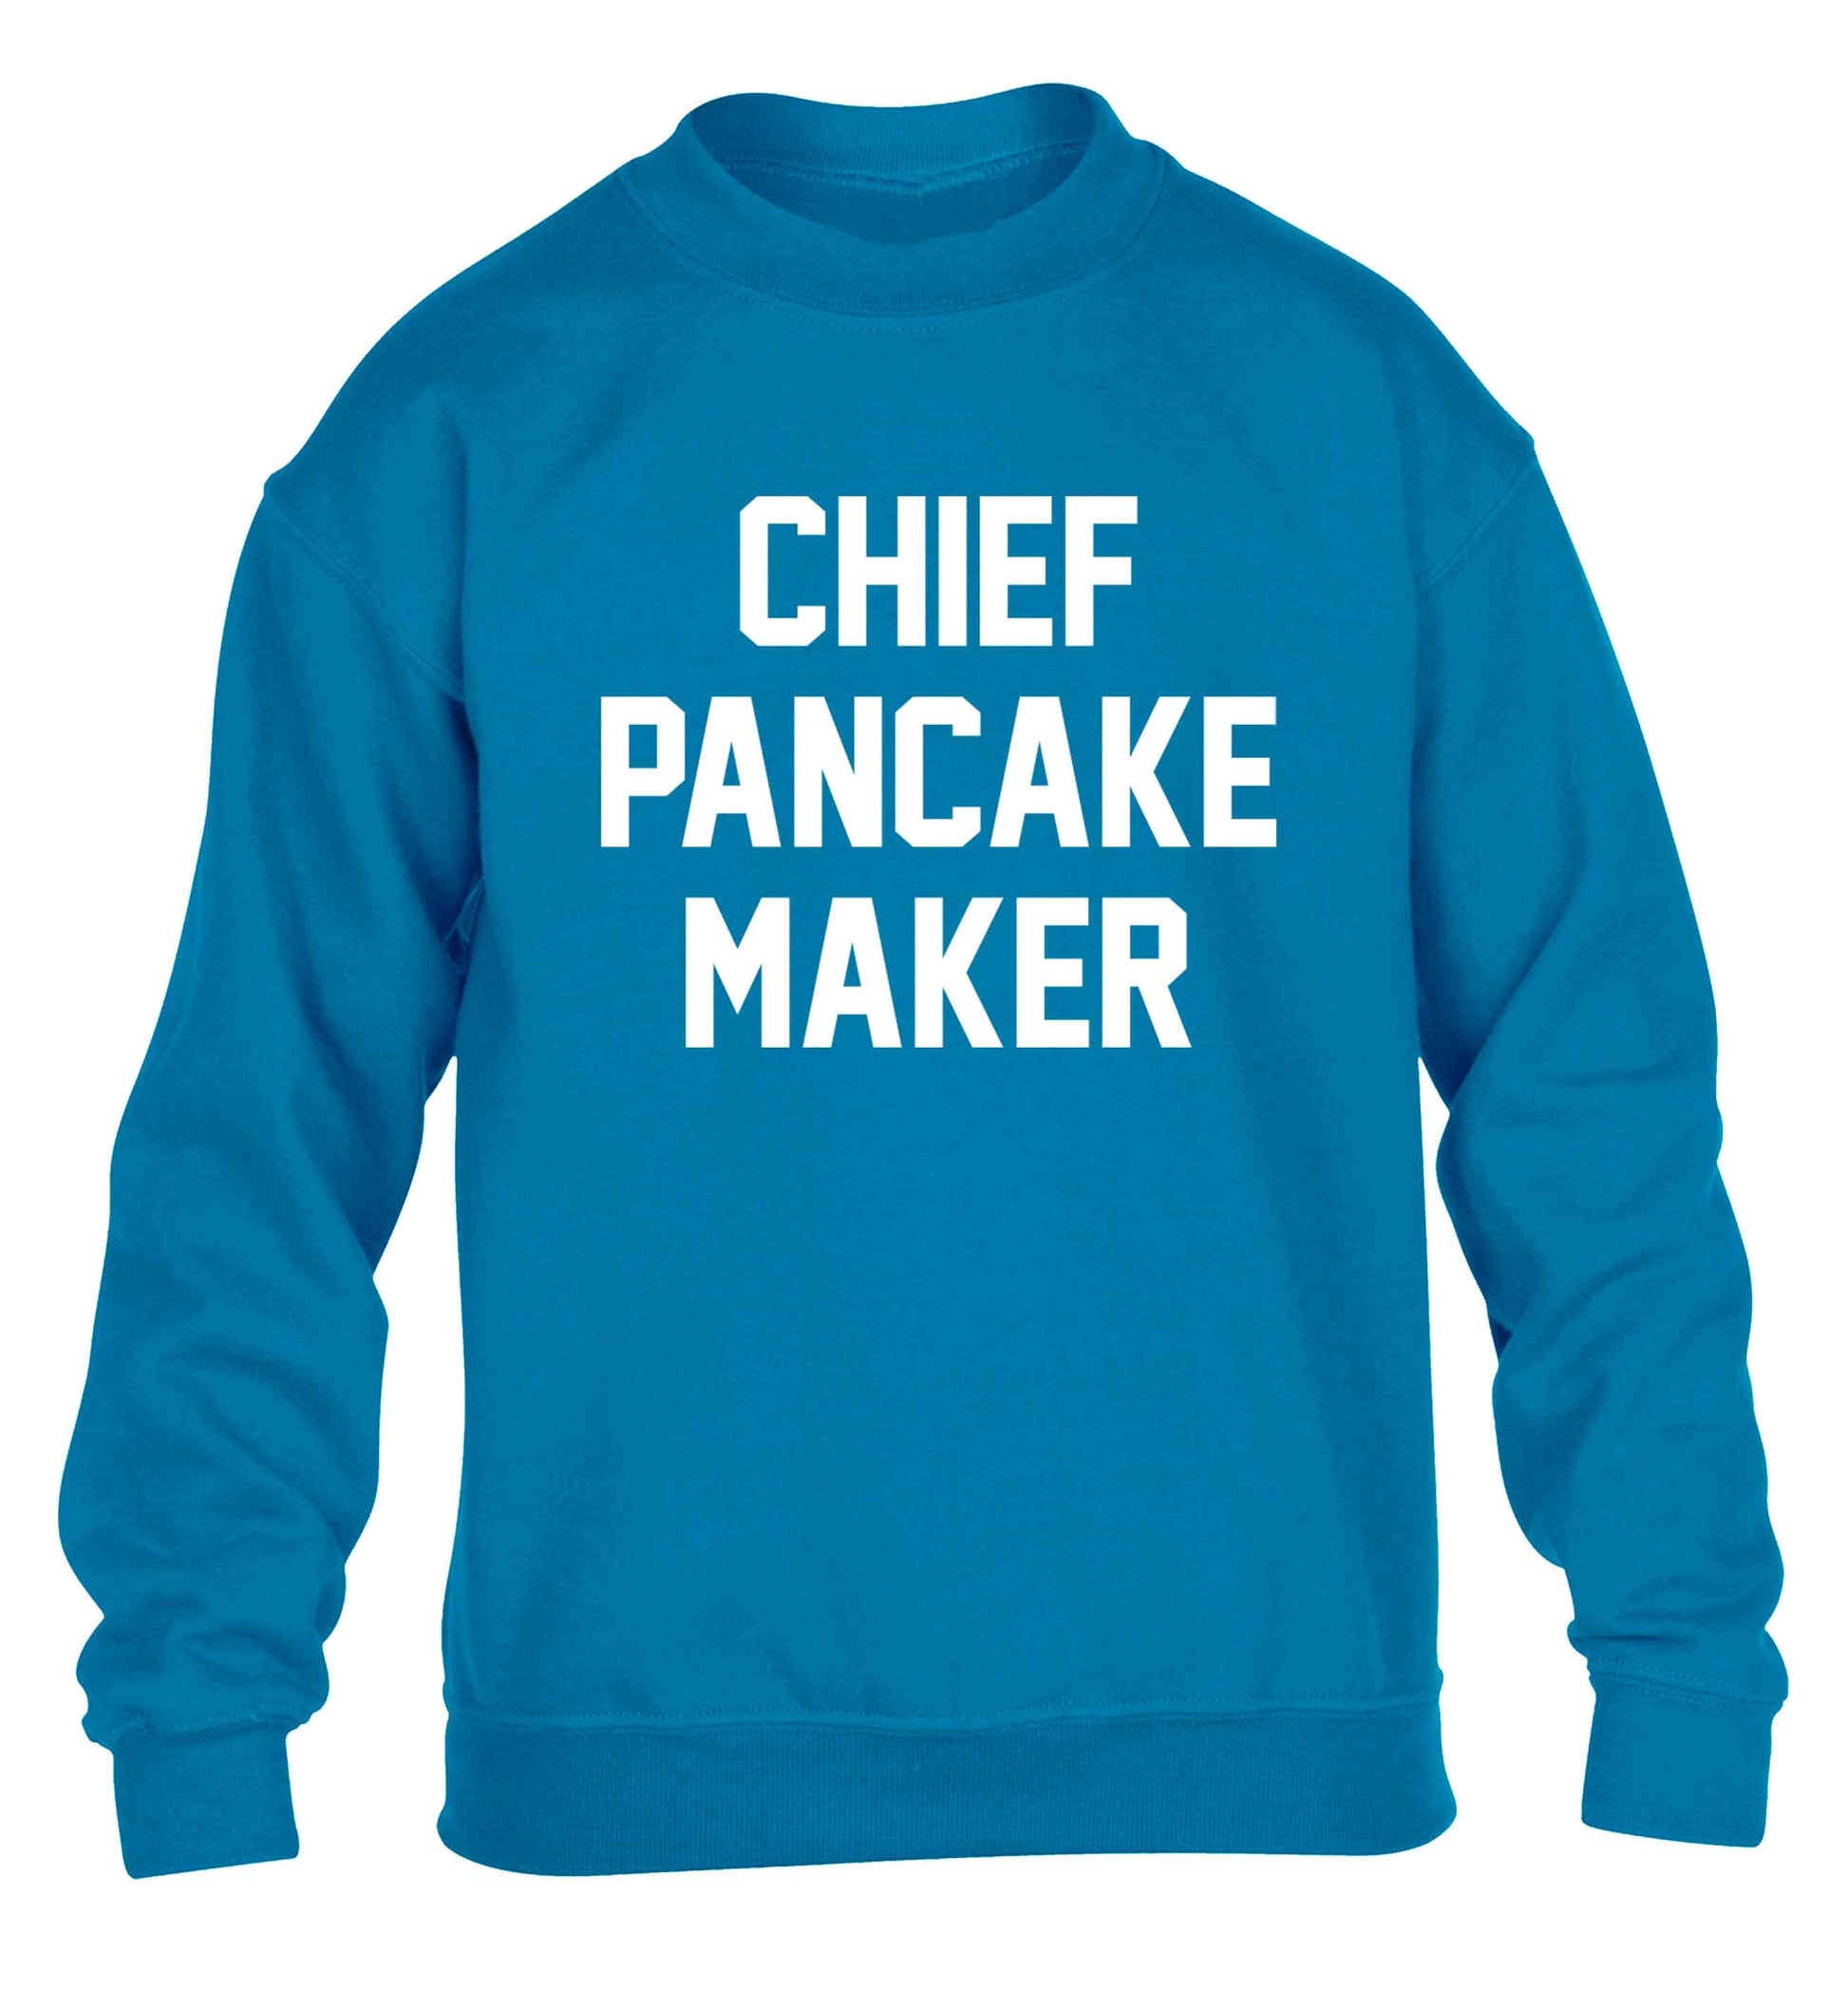 Chief pancake maker children's blue sweater 12-13 Years